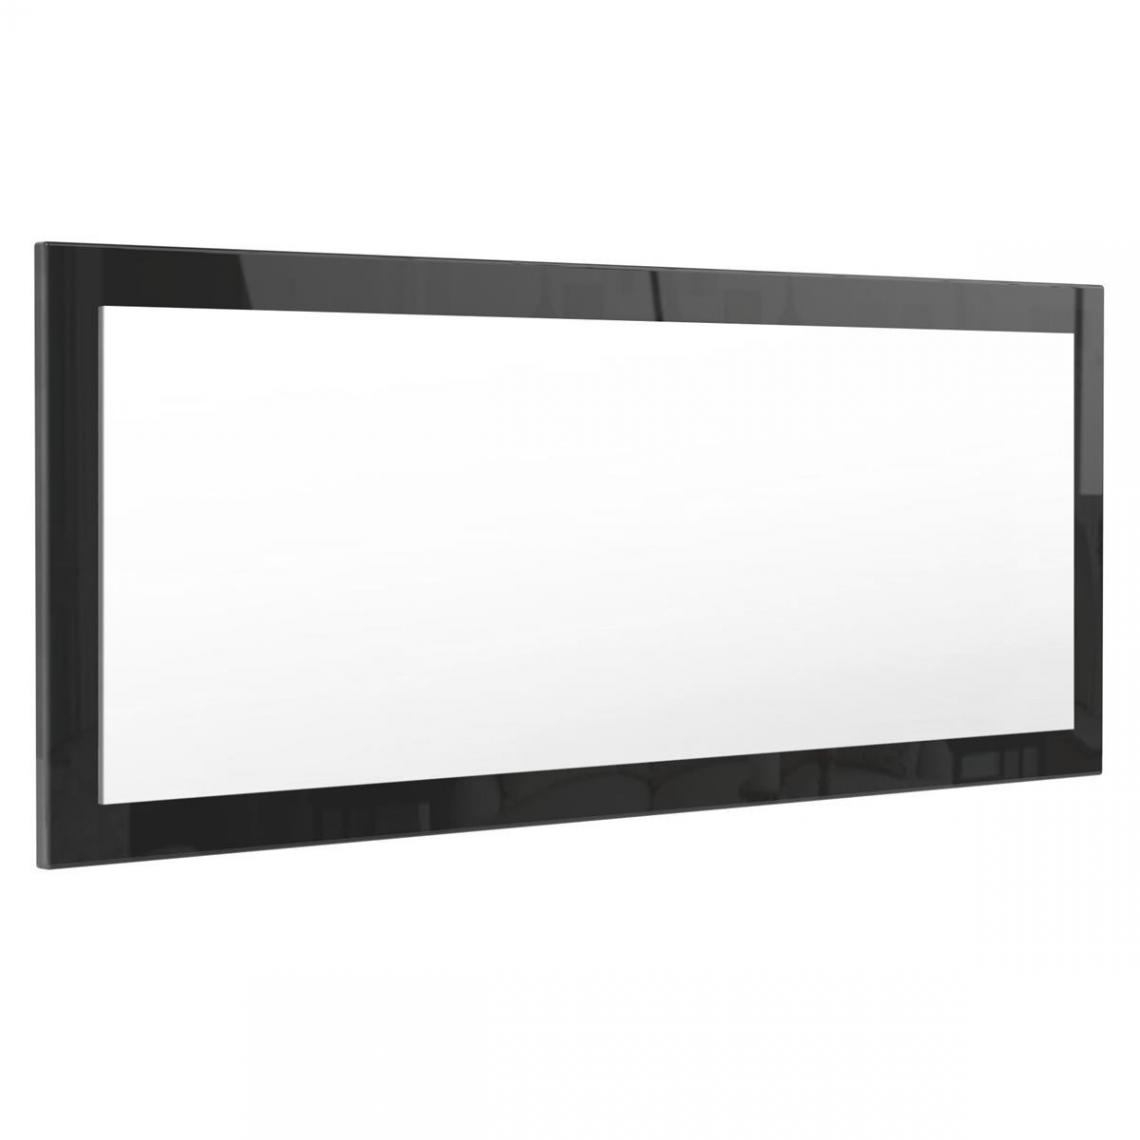 Mpc - Miroir noir brillant (HxLxP): 139 x 55 x 2 - Miroir de salle de bain